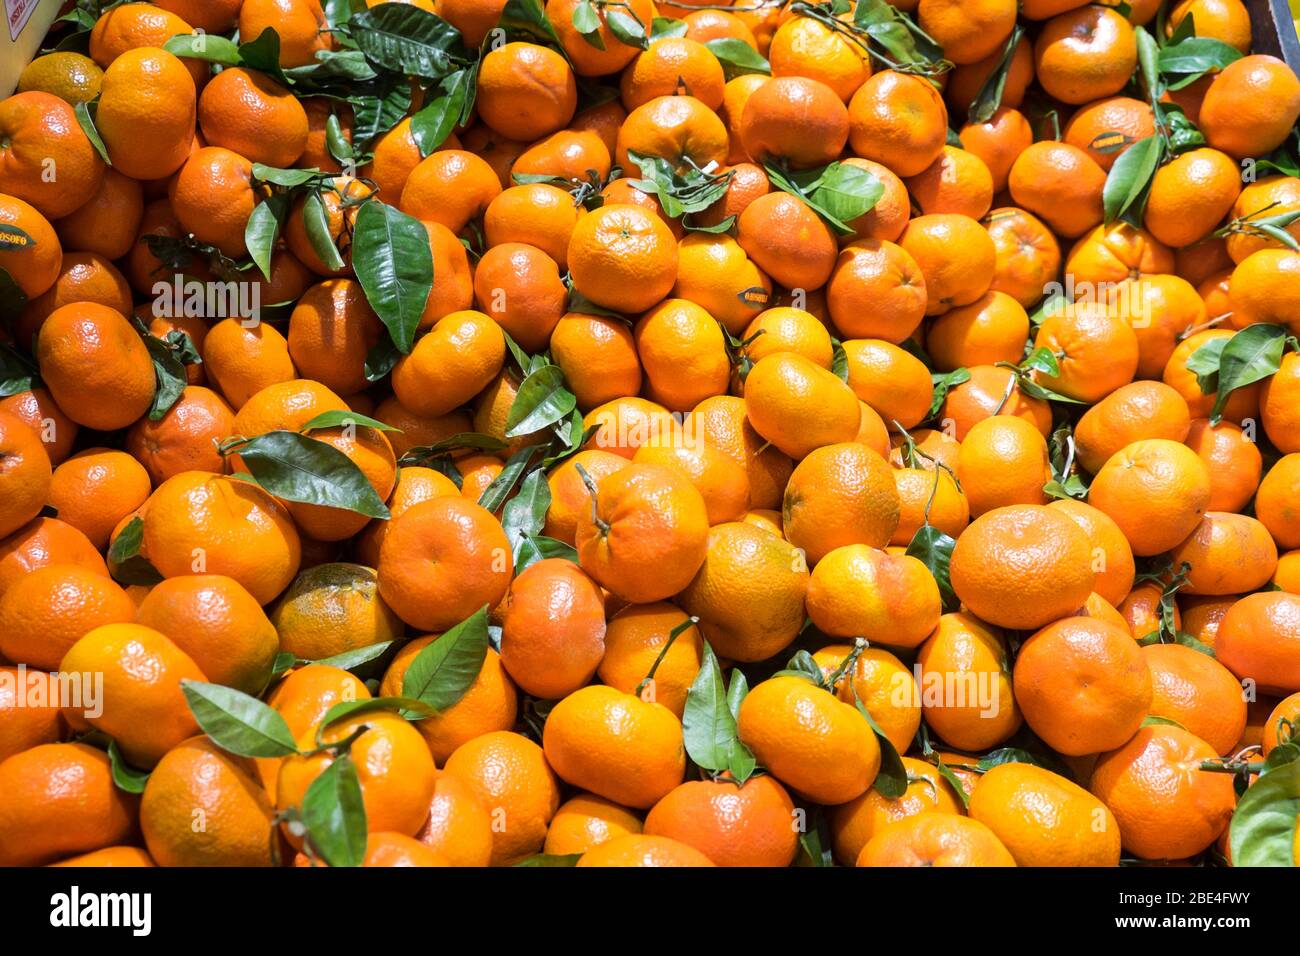 Mandarini o satsuma in mostra con foglie verdi Foto Stock